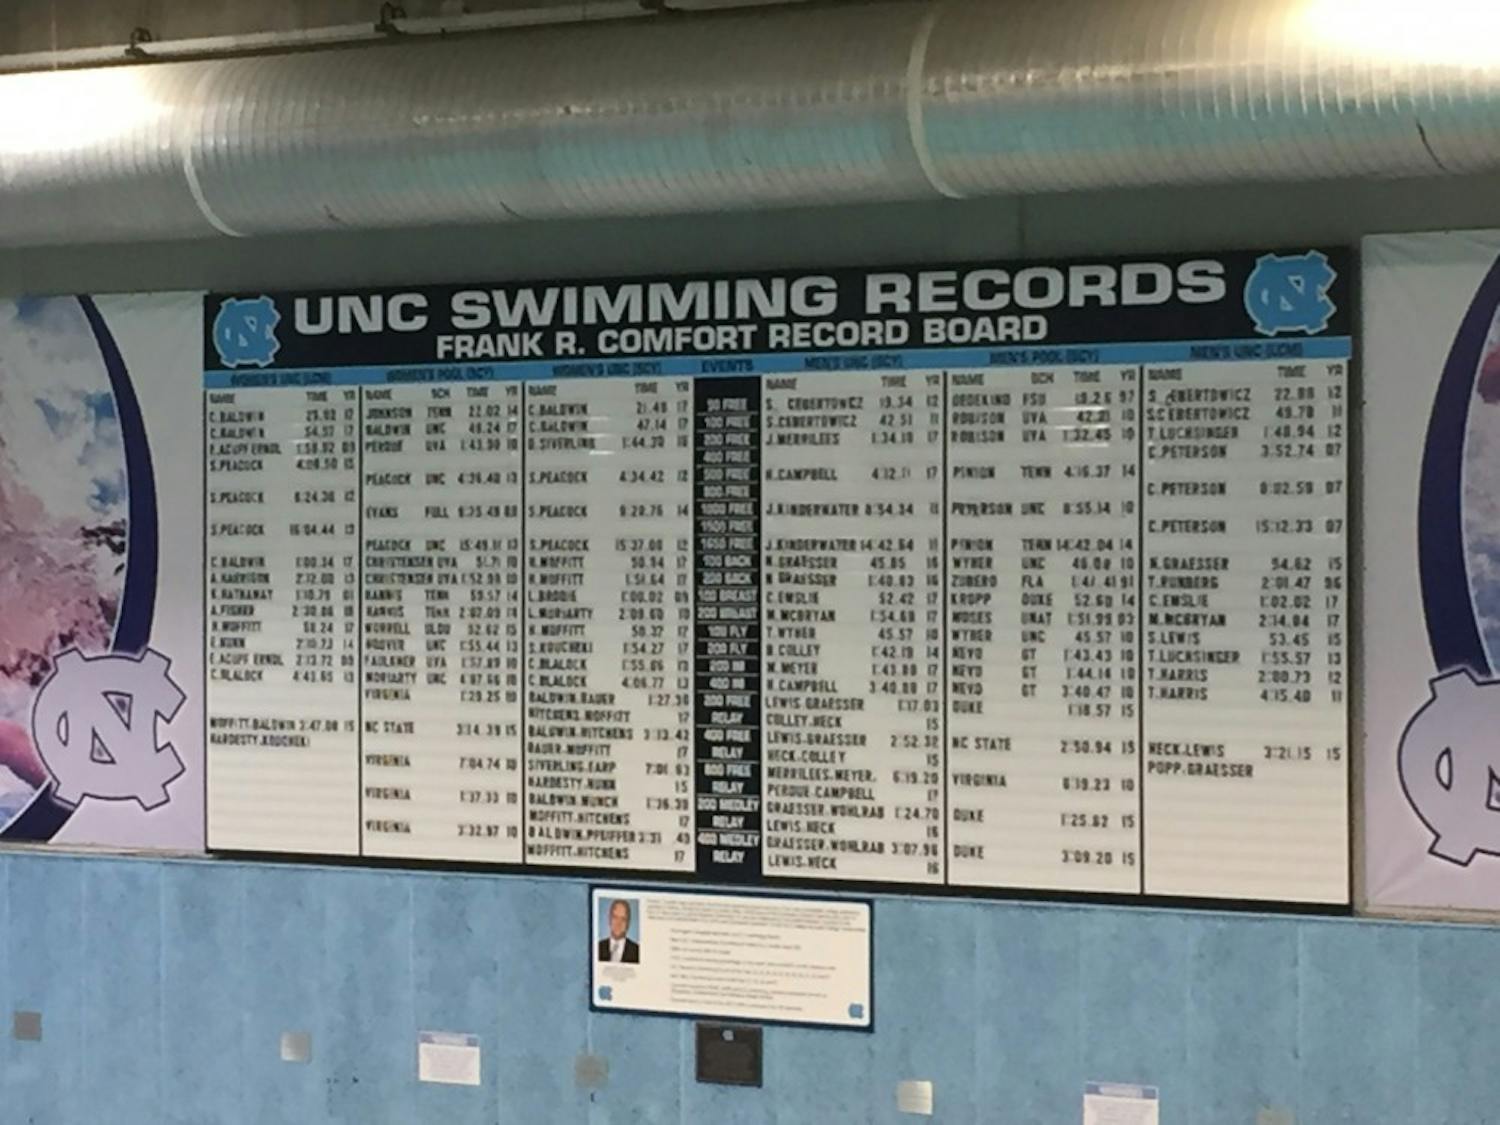 Swim dive record board